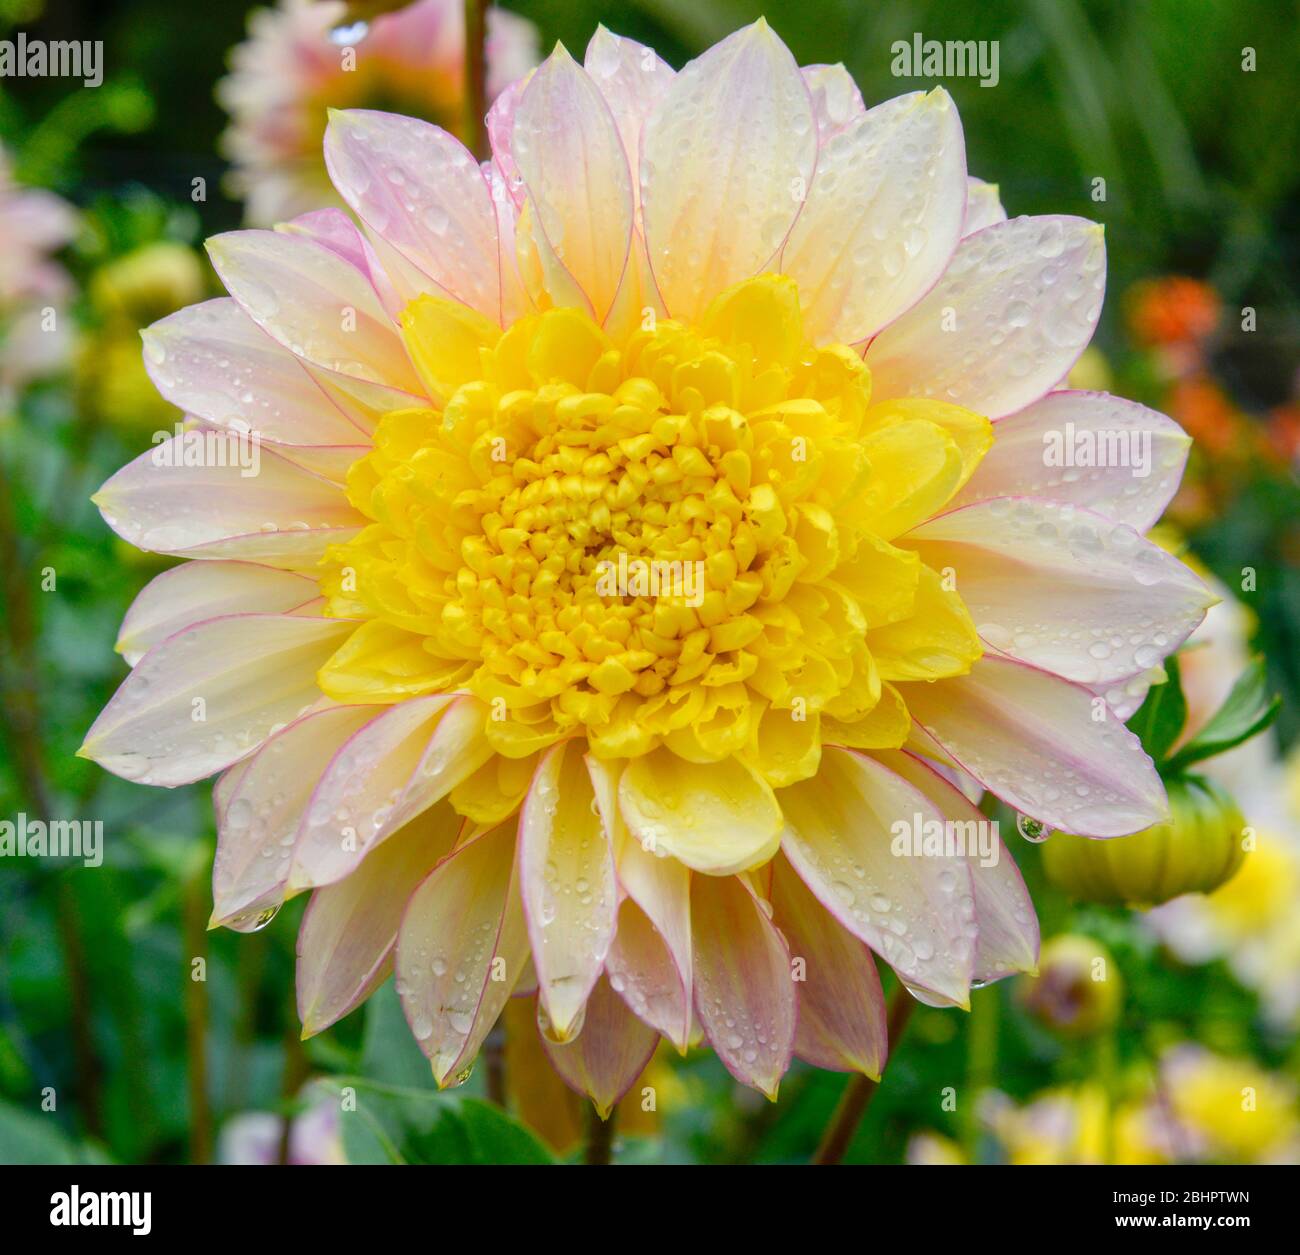 Gros plan d'une tête de fleur de Dahlia jaune et blanc avec des gouttes d'eau sur les pétales de fleurs Banque D'Images